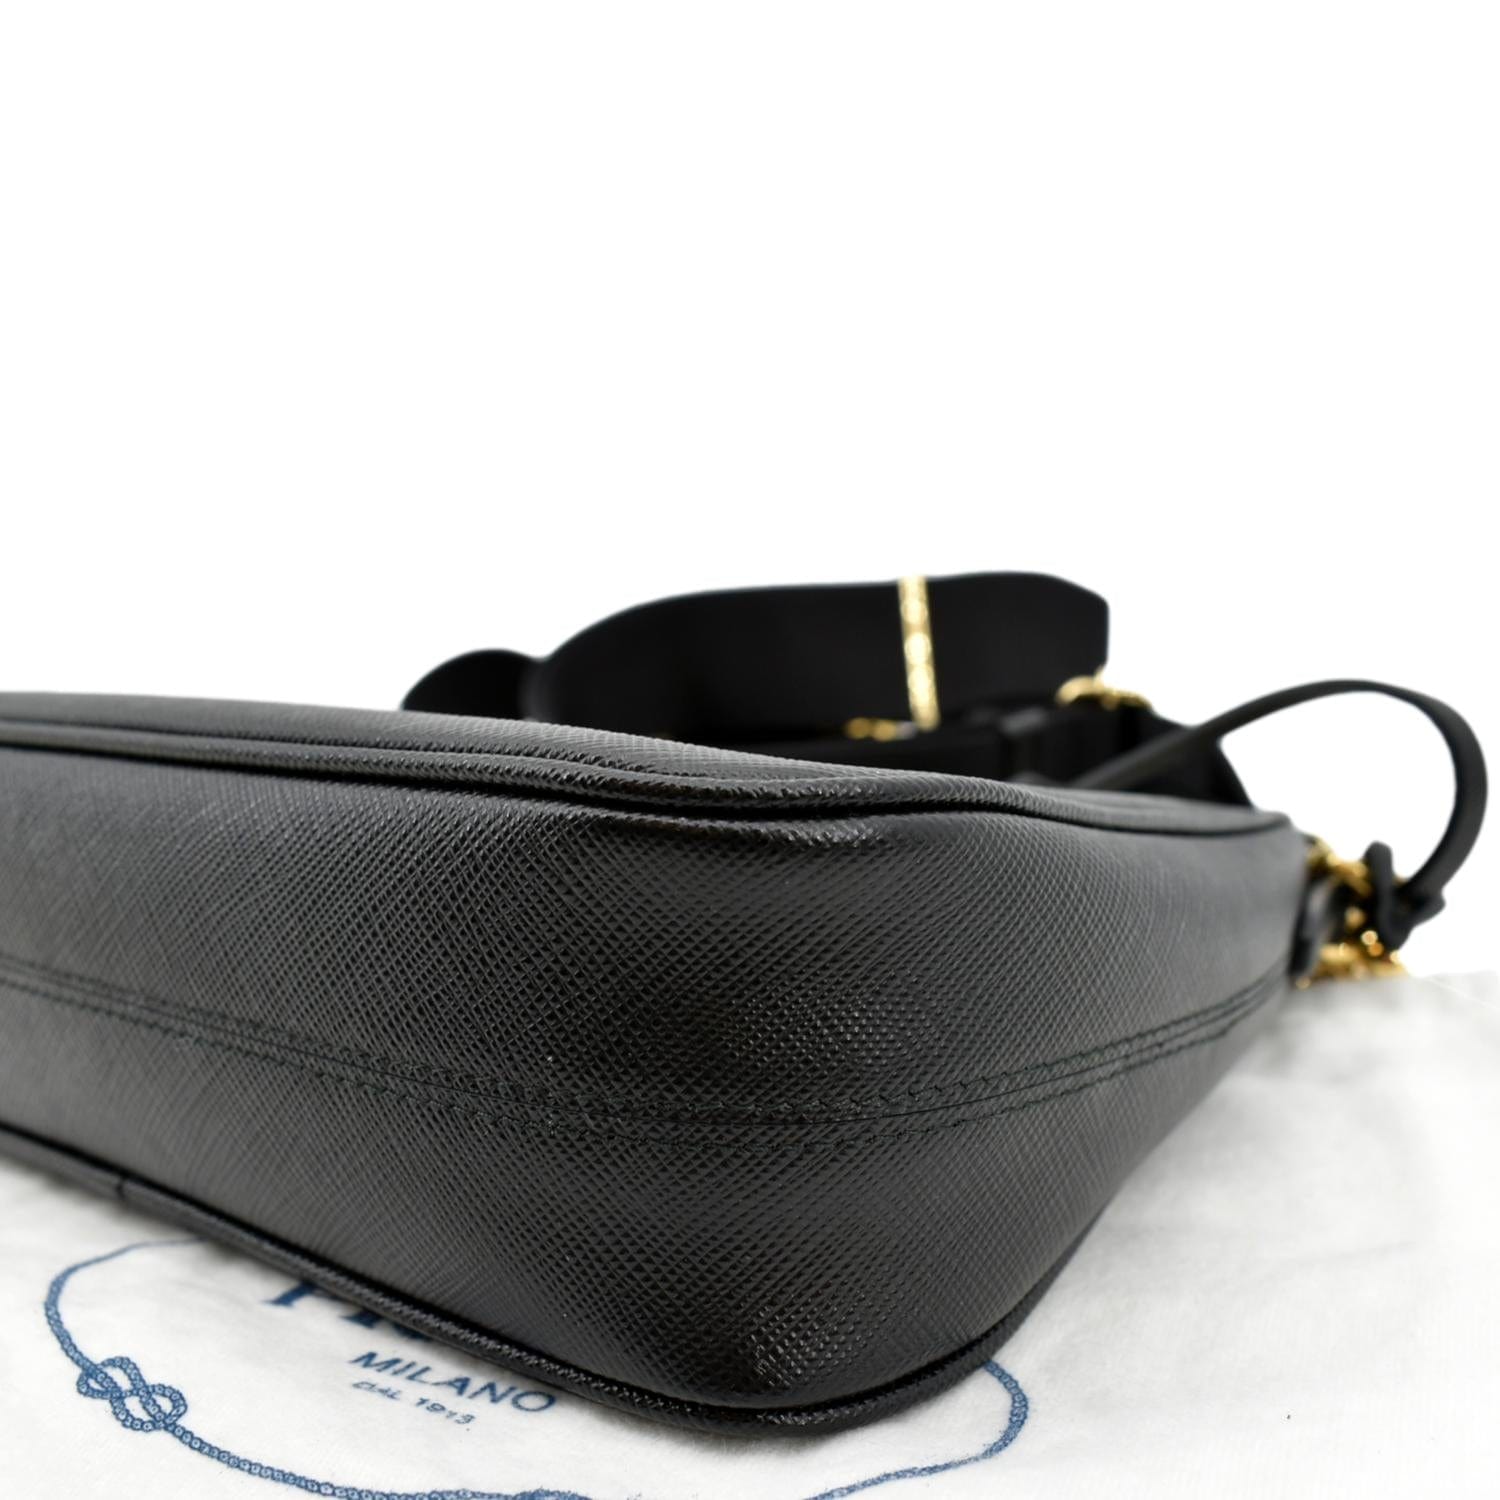 PRADA Re-Edition 2005 Saffiano Leather Shoulder Bag Gray